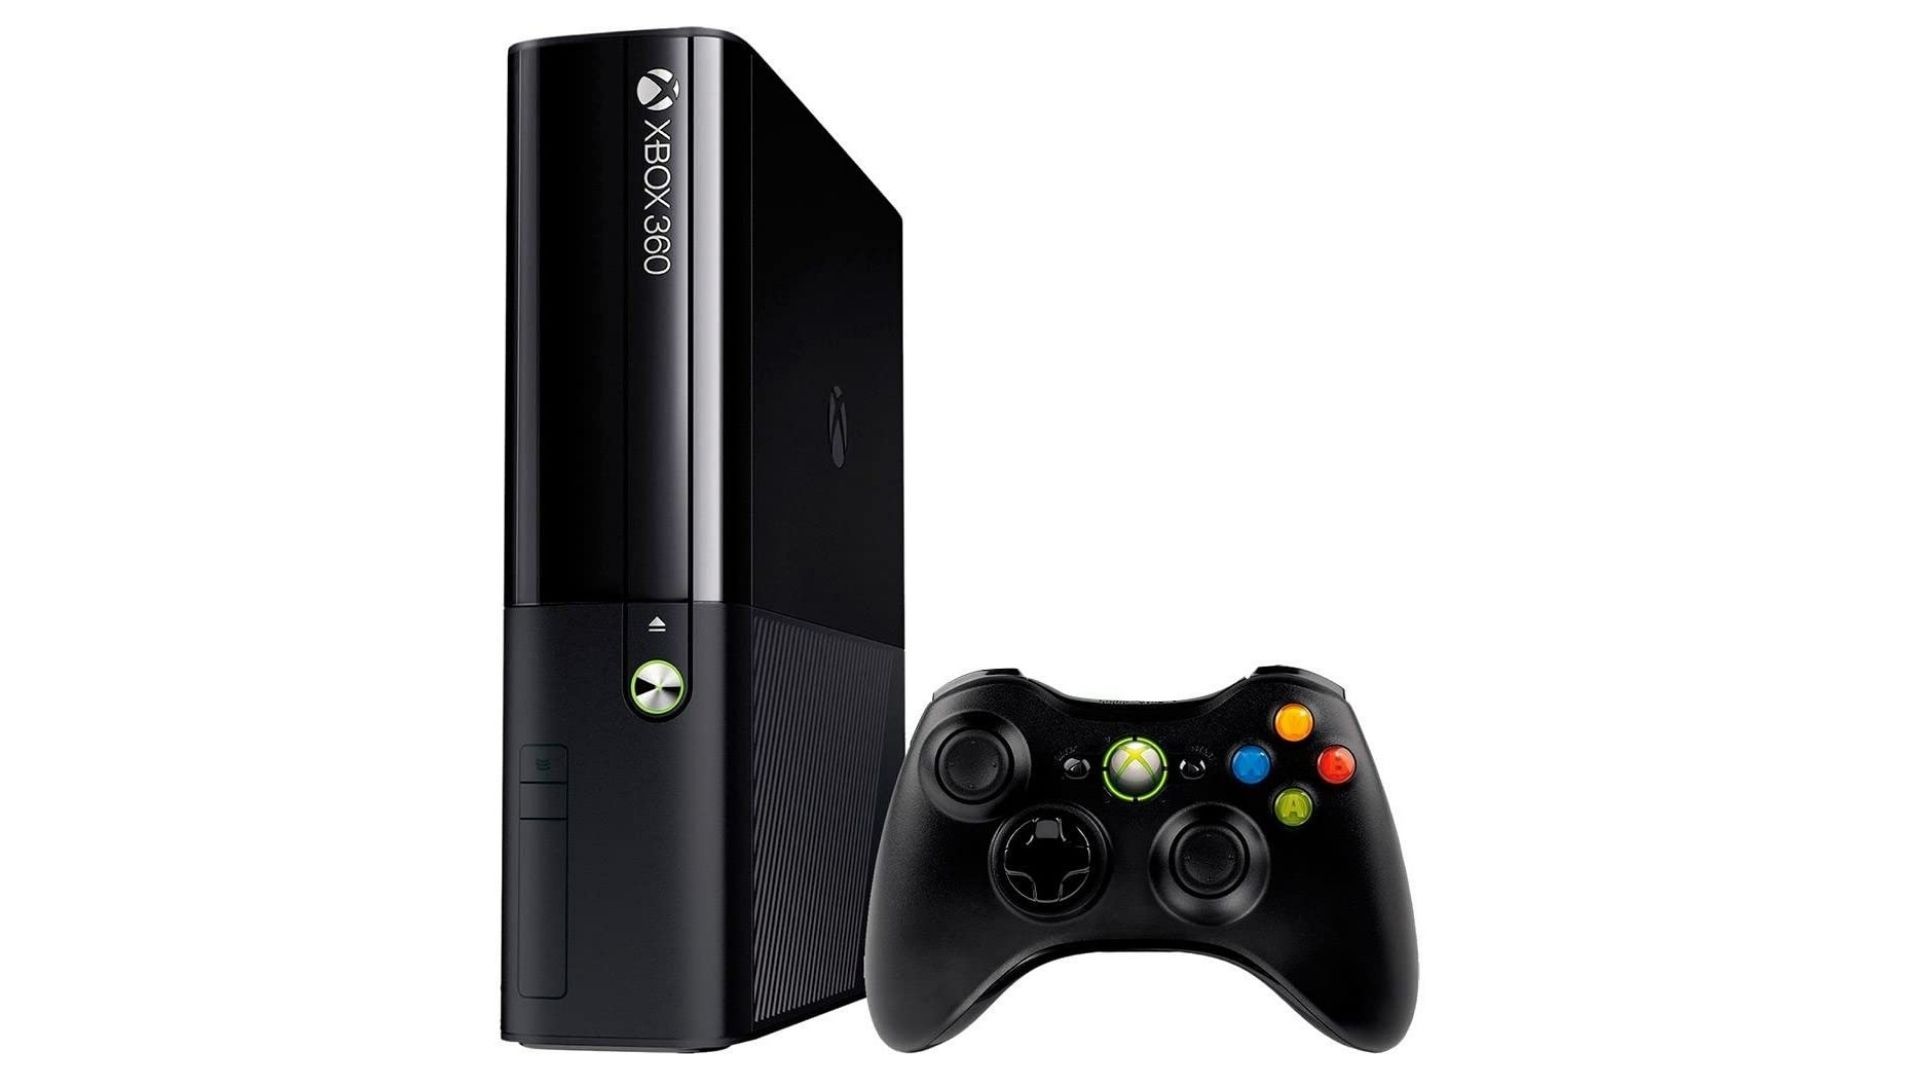 Promoção: Destravamento e Atualização 2.0 e 3.0 Xbox 360  R9 Games - A  mais completa loja de games de Rio Claro e região